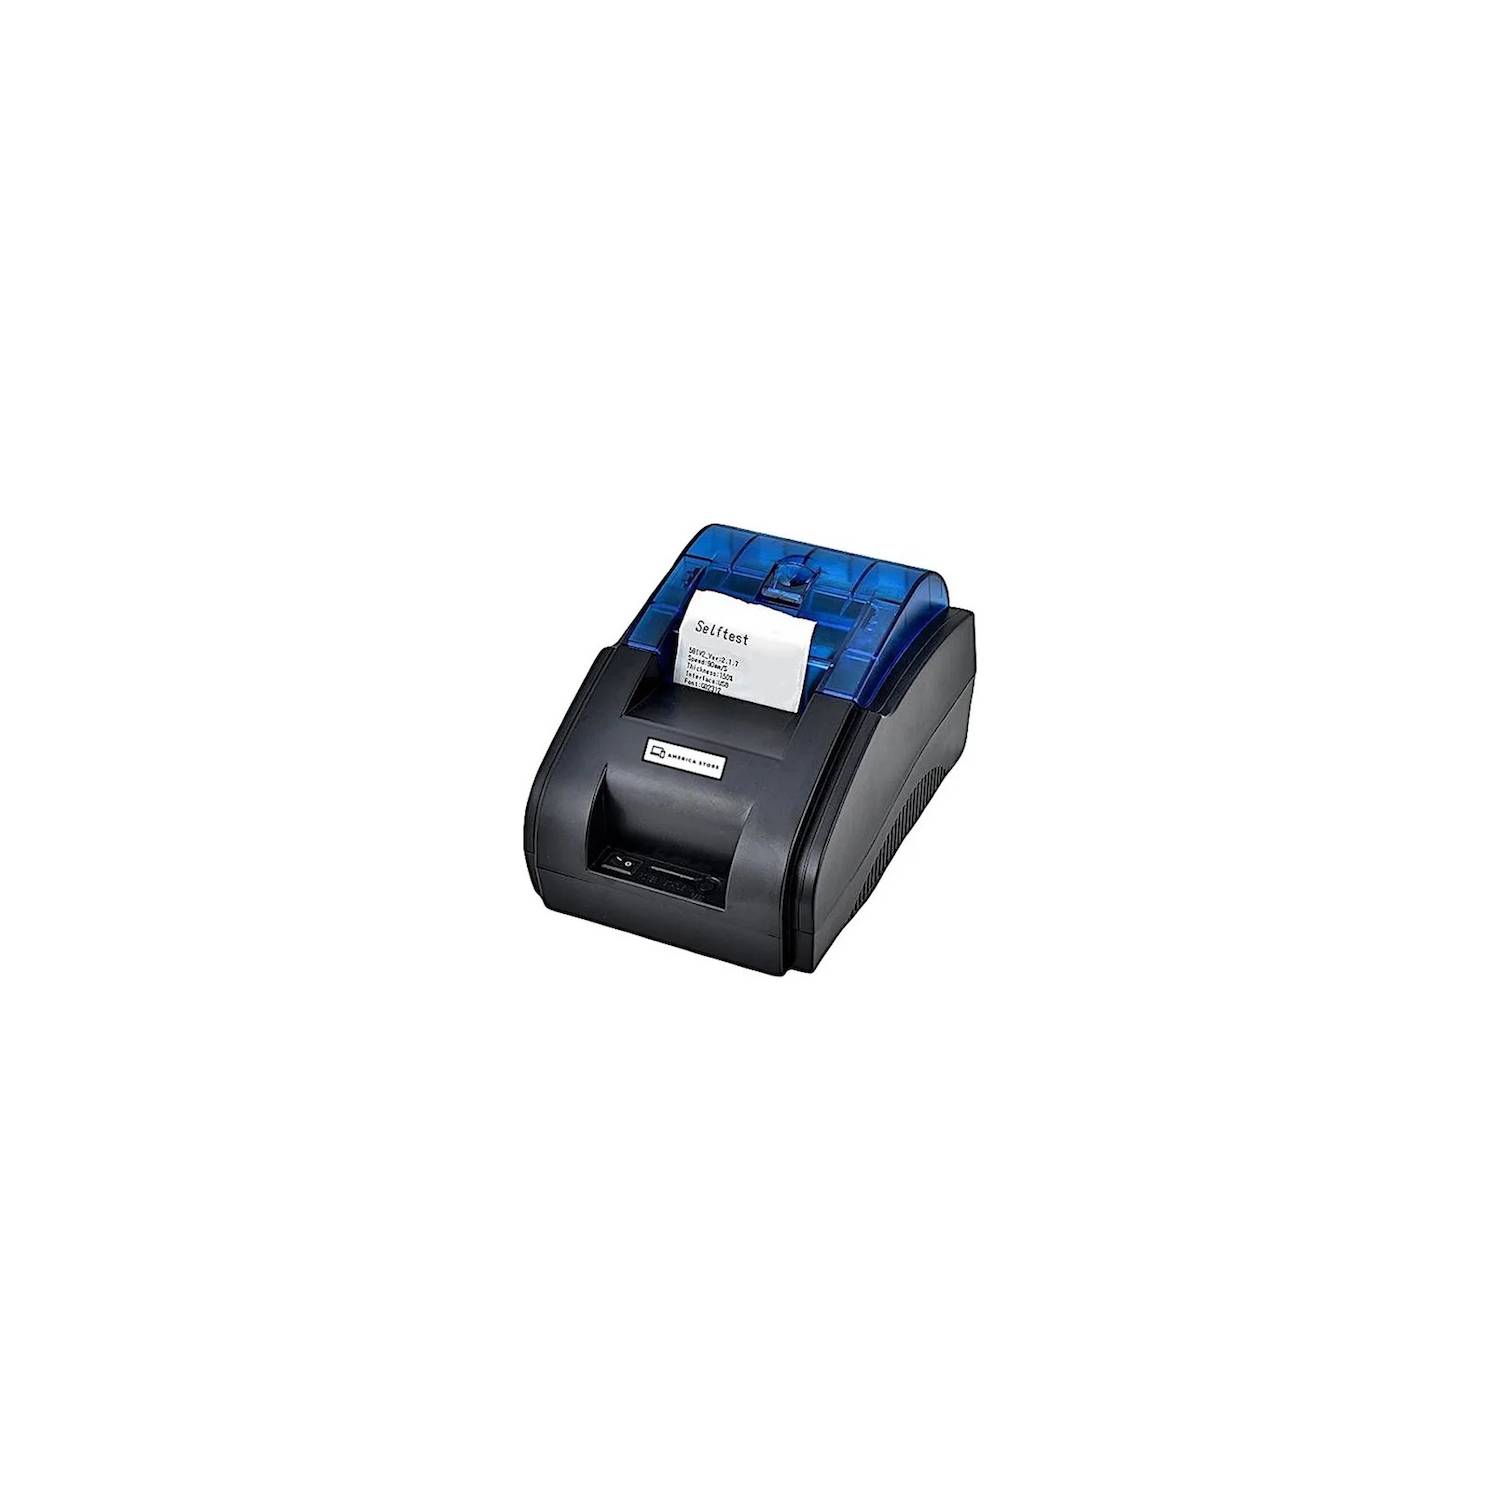 Impresora térmica pos tickets 58mm xprinter XPRINTER